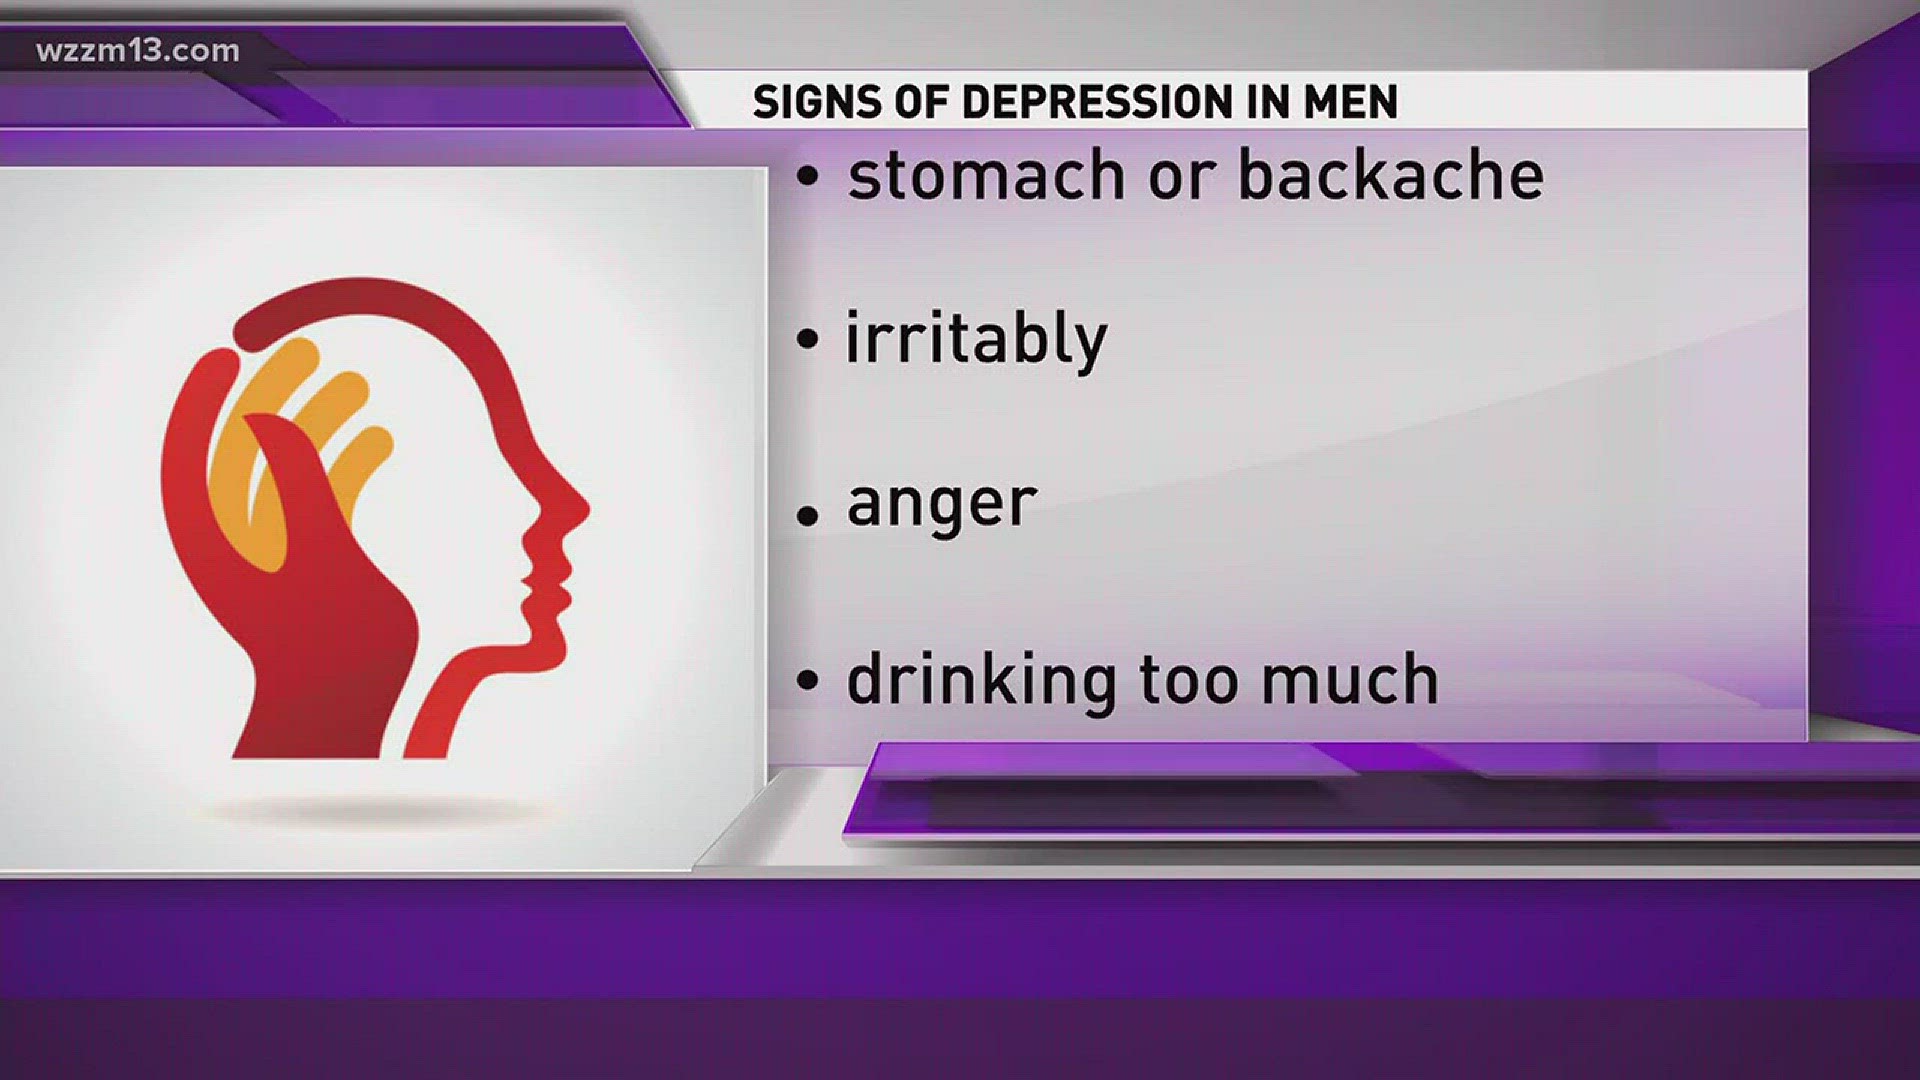 Men and mental health